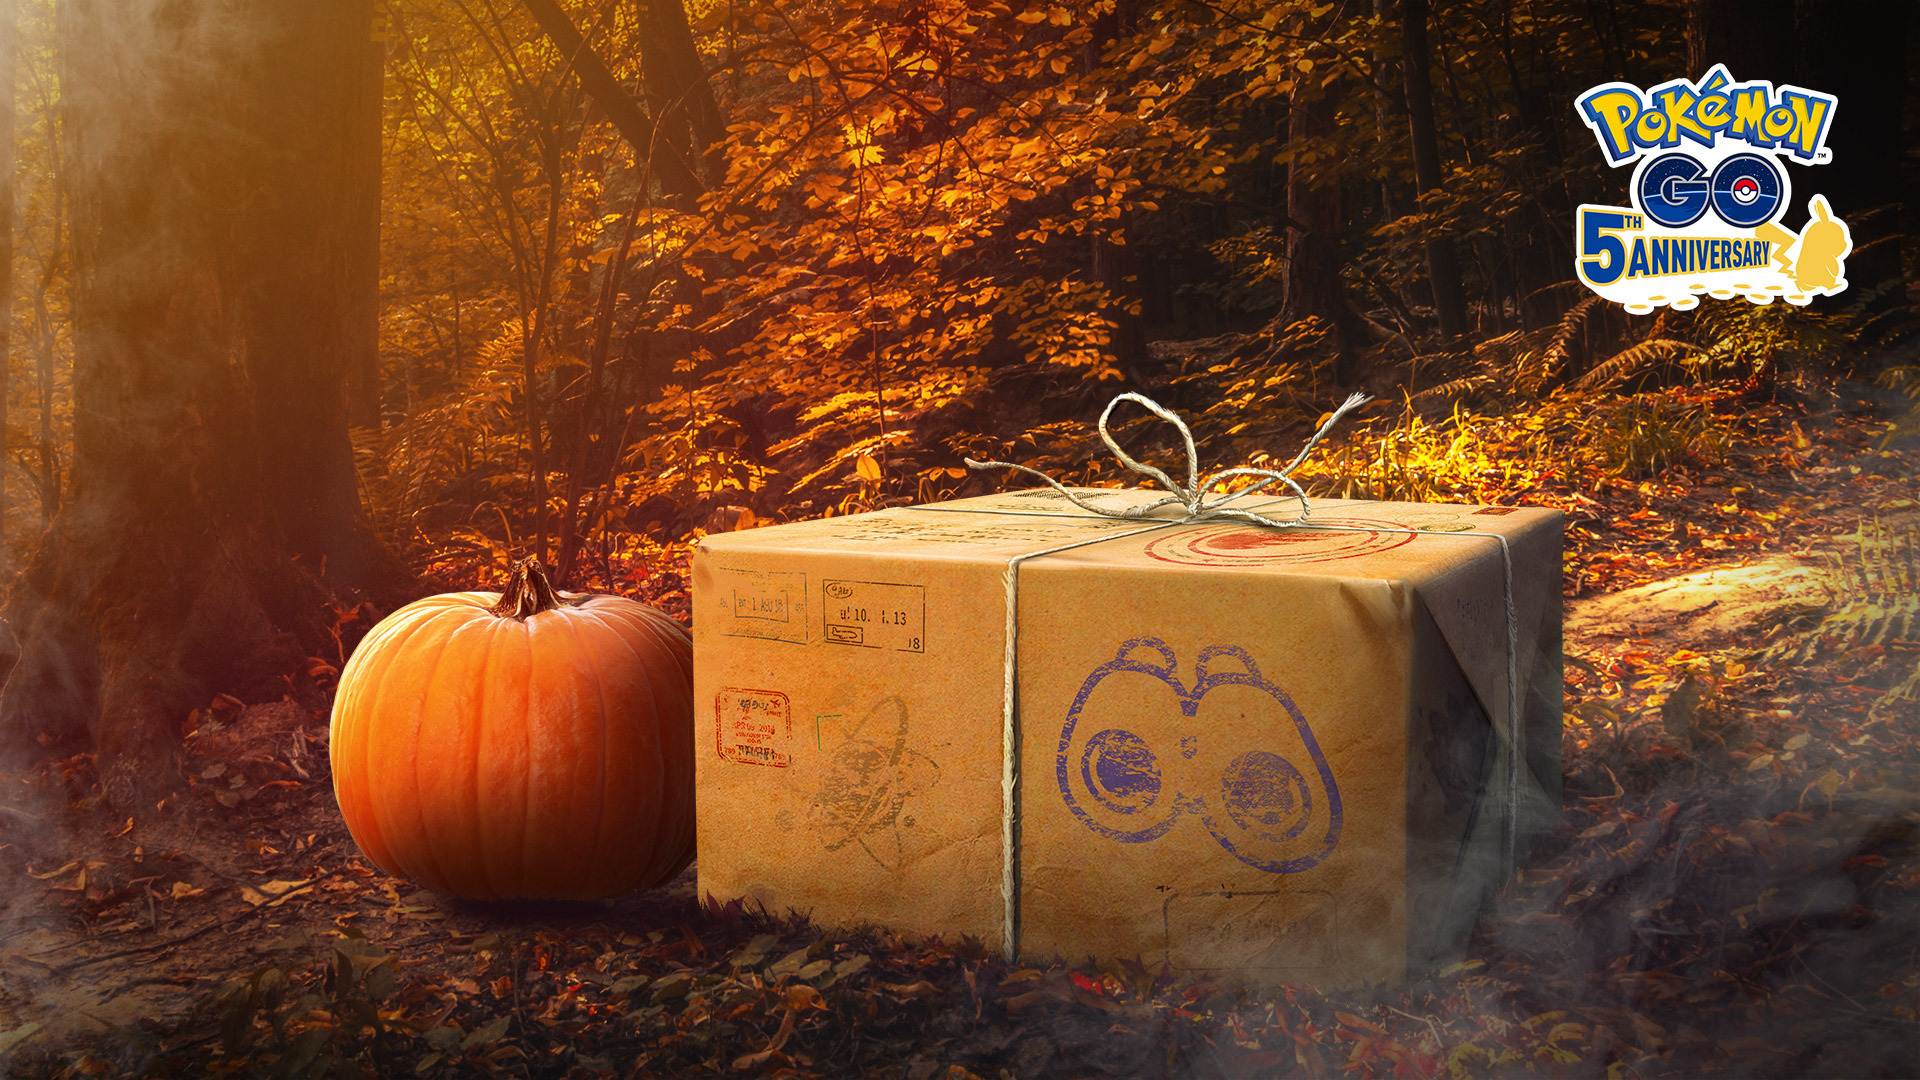 ポケモンgo にハロウィンの季節がやってくる 今週10月17日までのイベントスケジュール公開 Game Watch